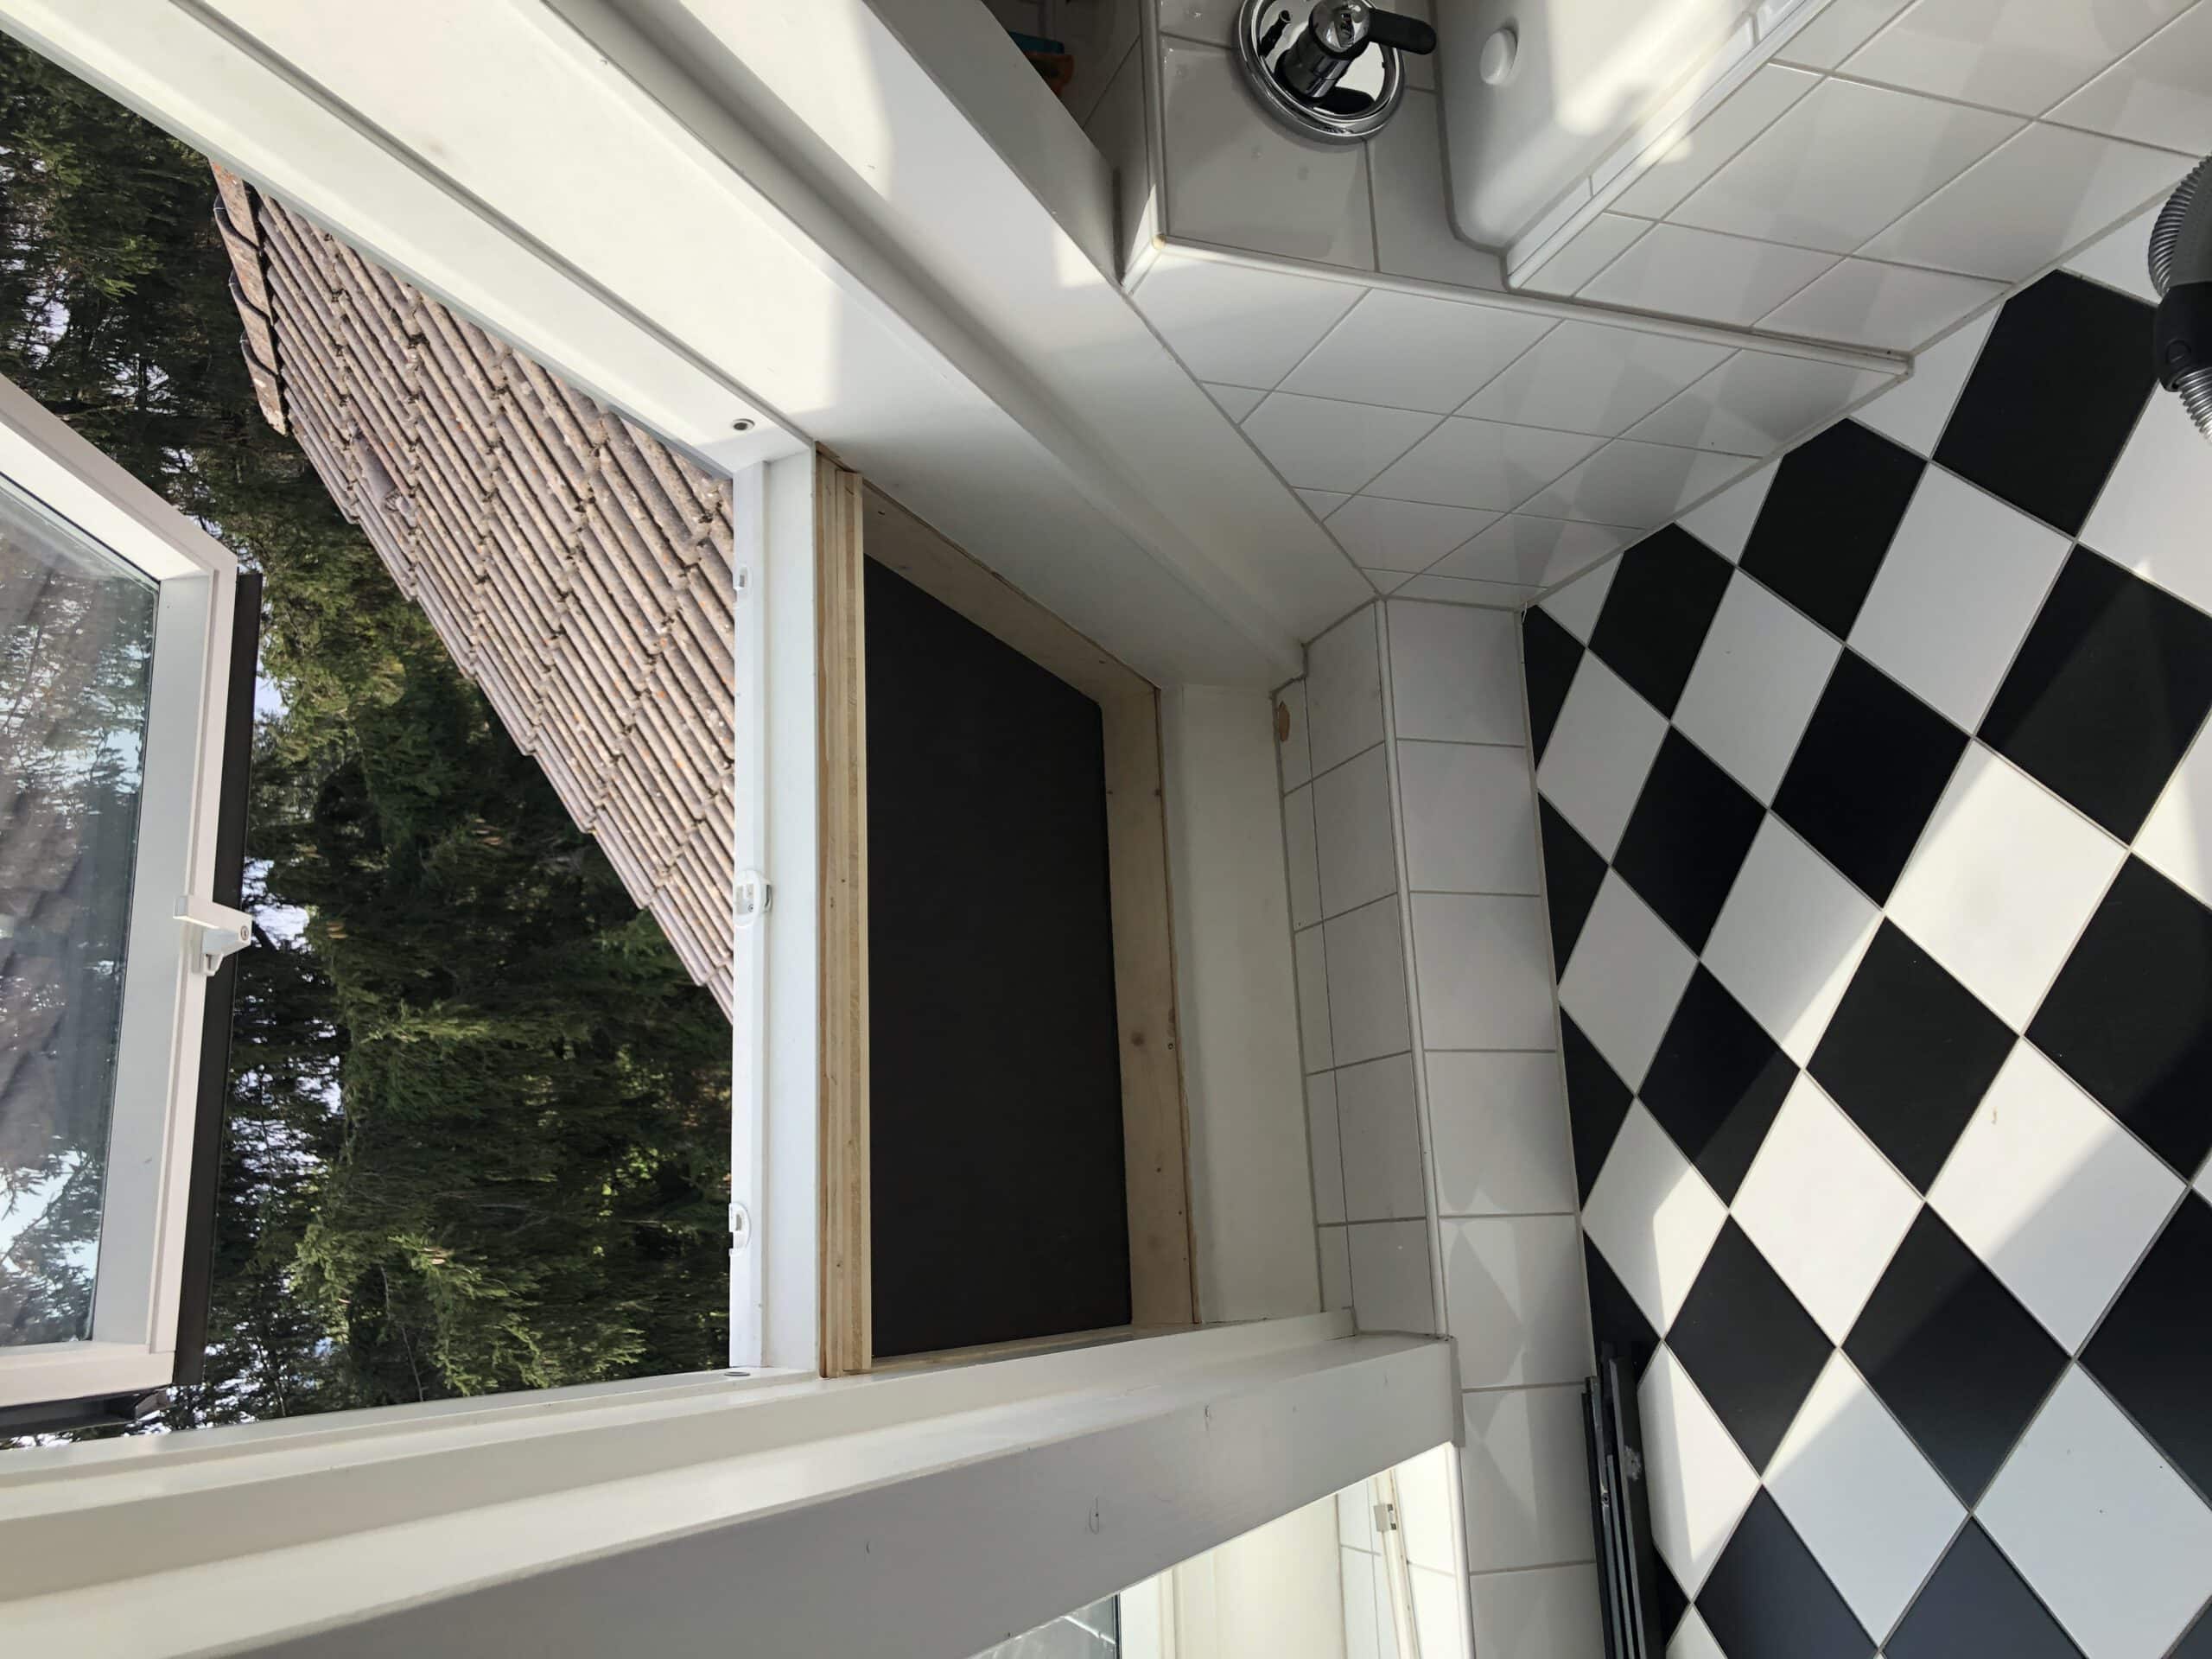 Dachfenstersanierung Velux-Kombination